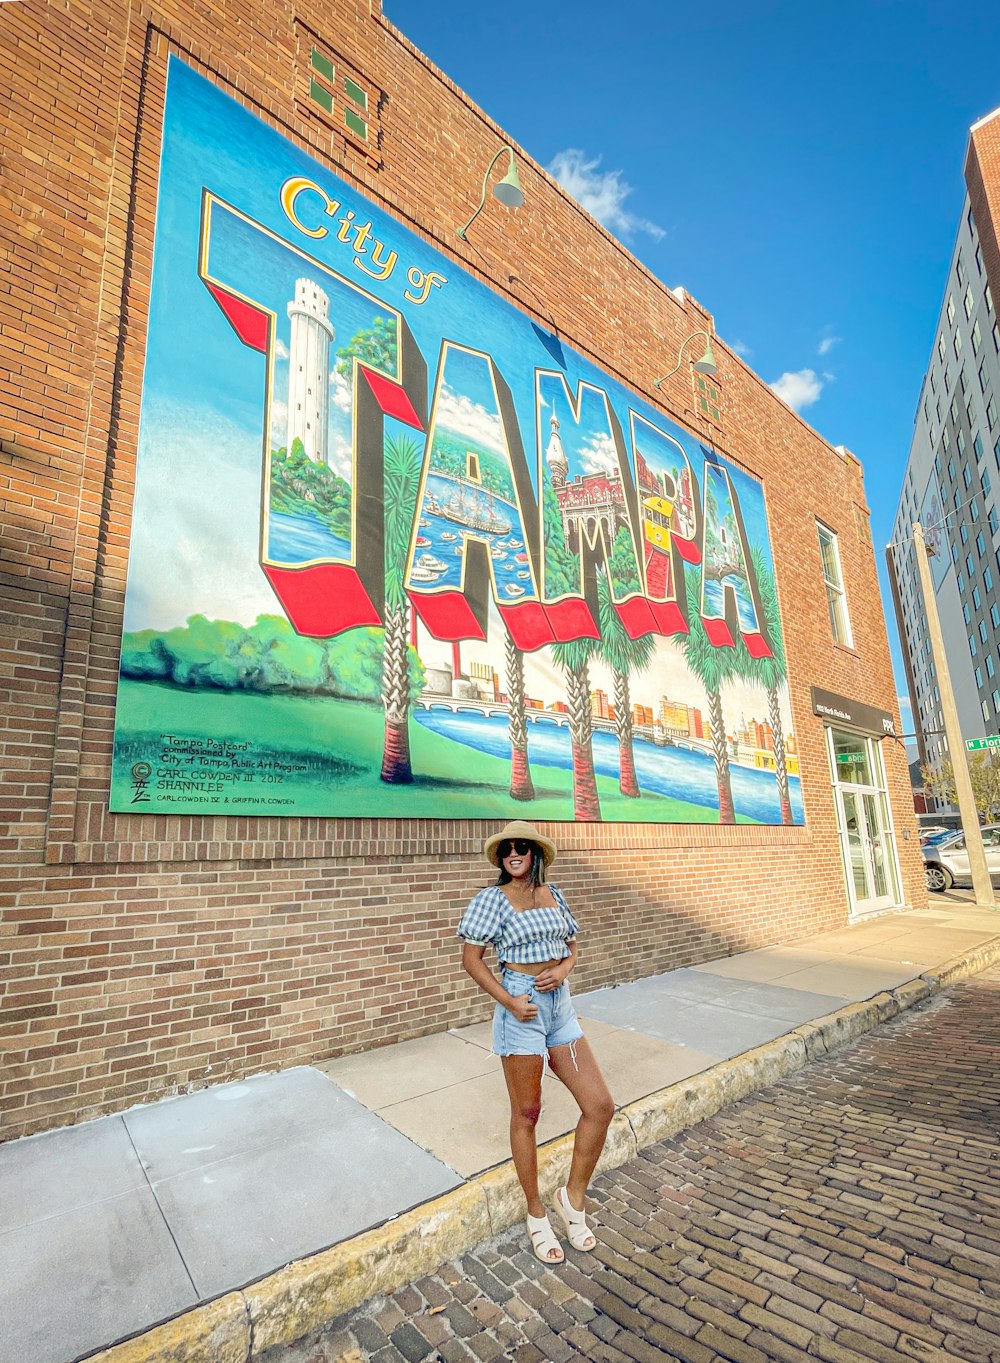 벽화가 그려진 건물 앞에 서 있는 여자